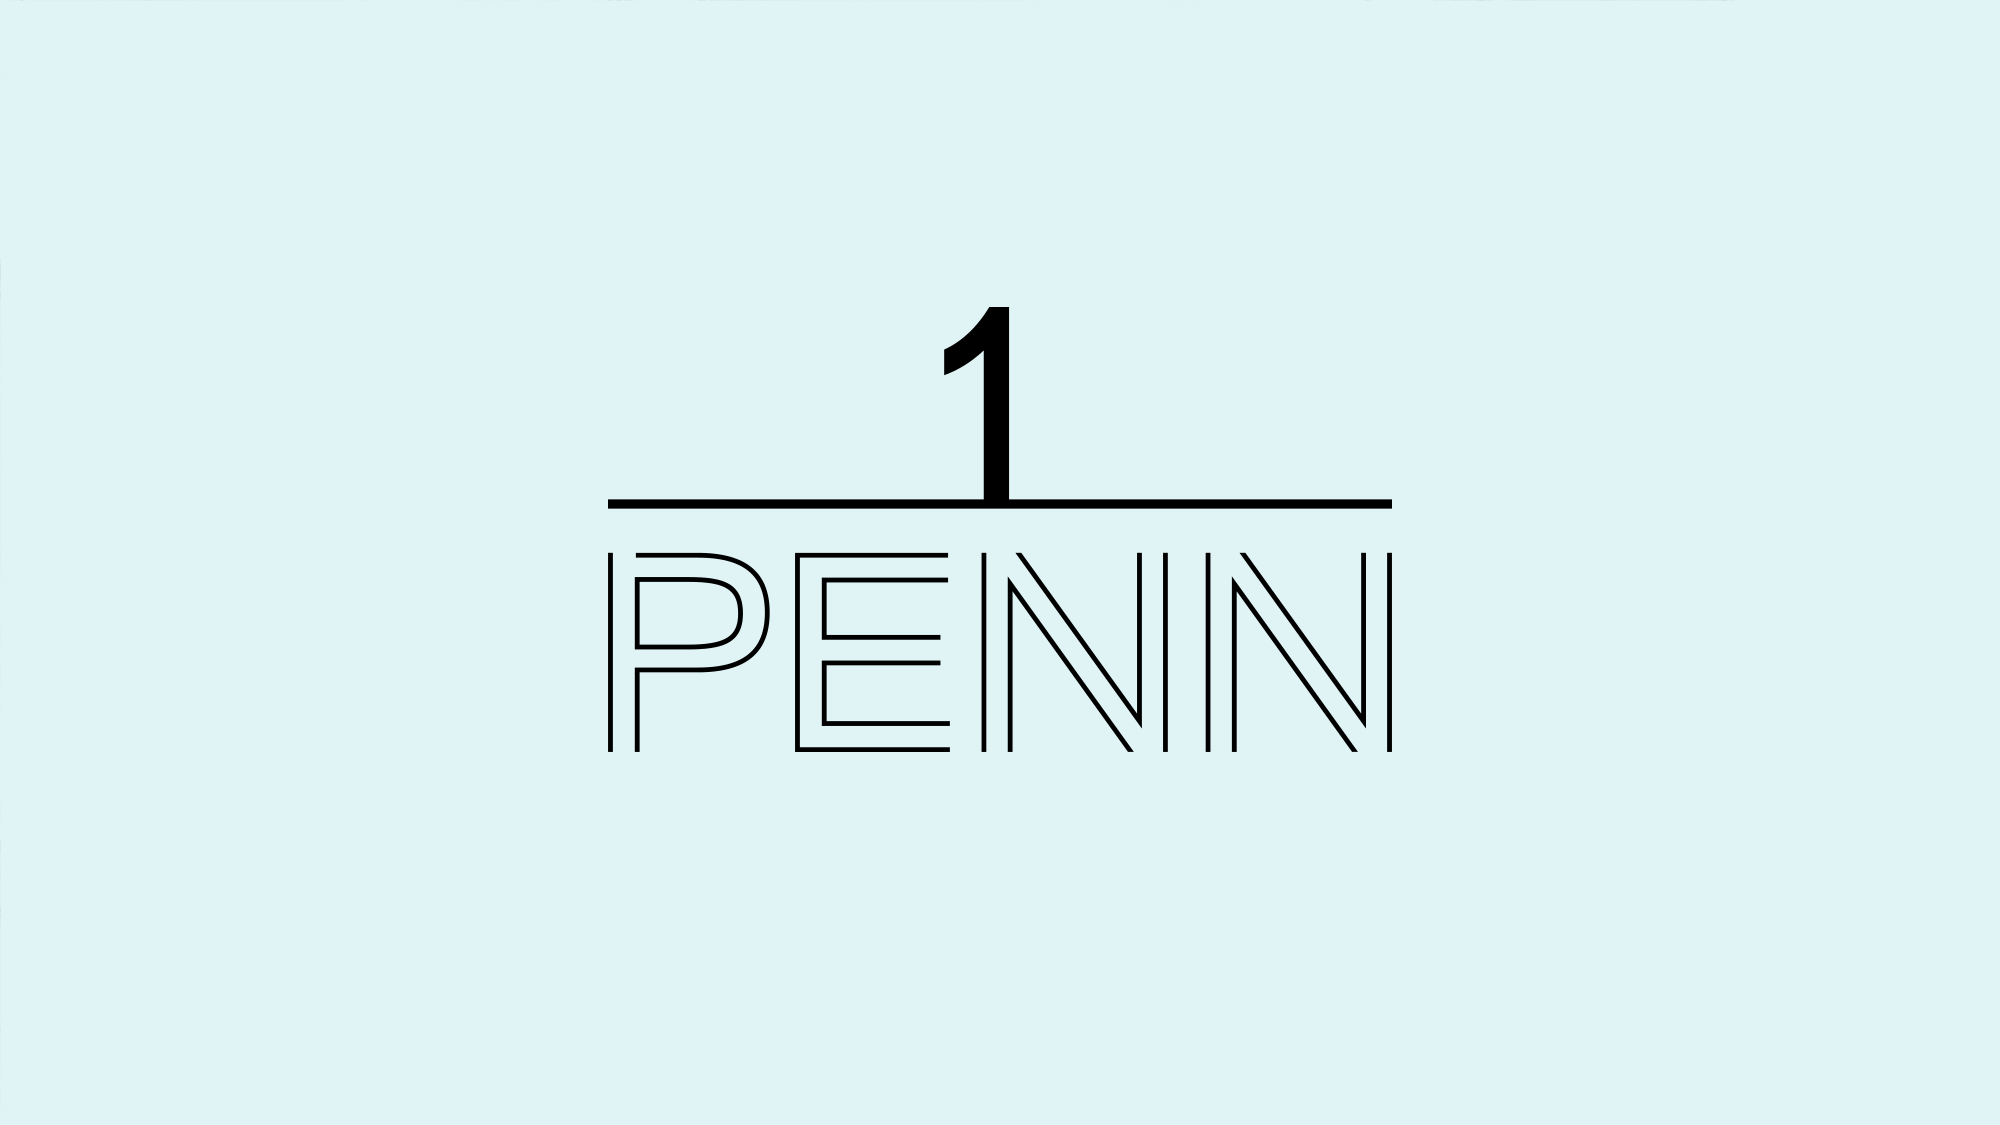 Identity Design for One Penn Plaza